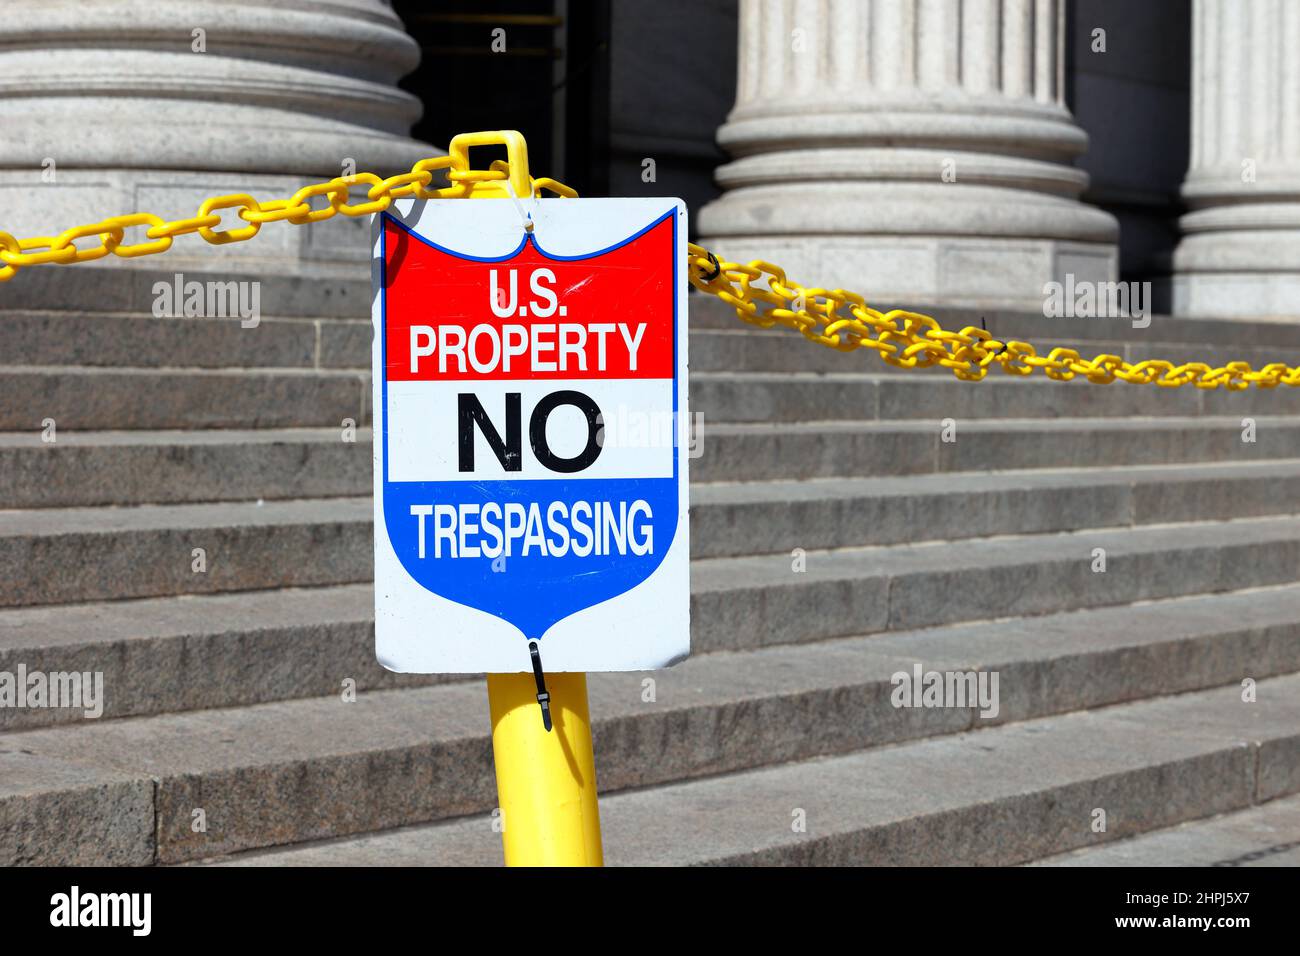 Una señal dice 'US Property No Trespassing' en los escalones de un edificio. Foto de stock